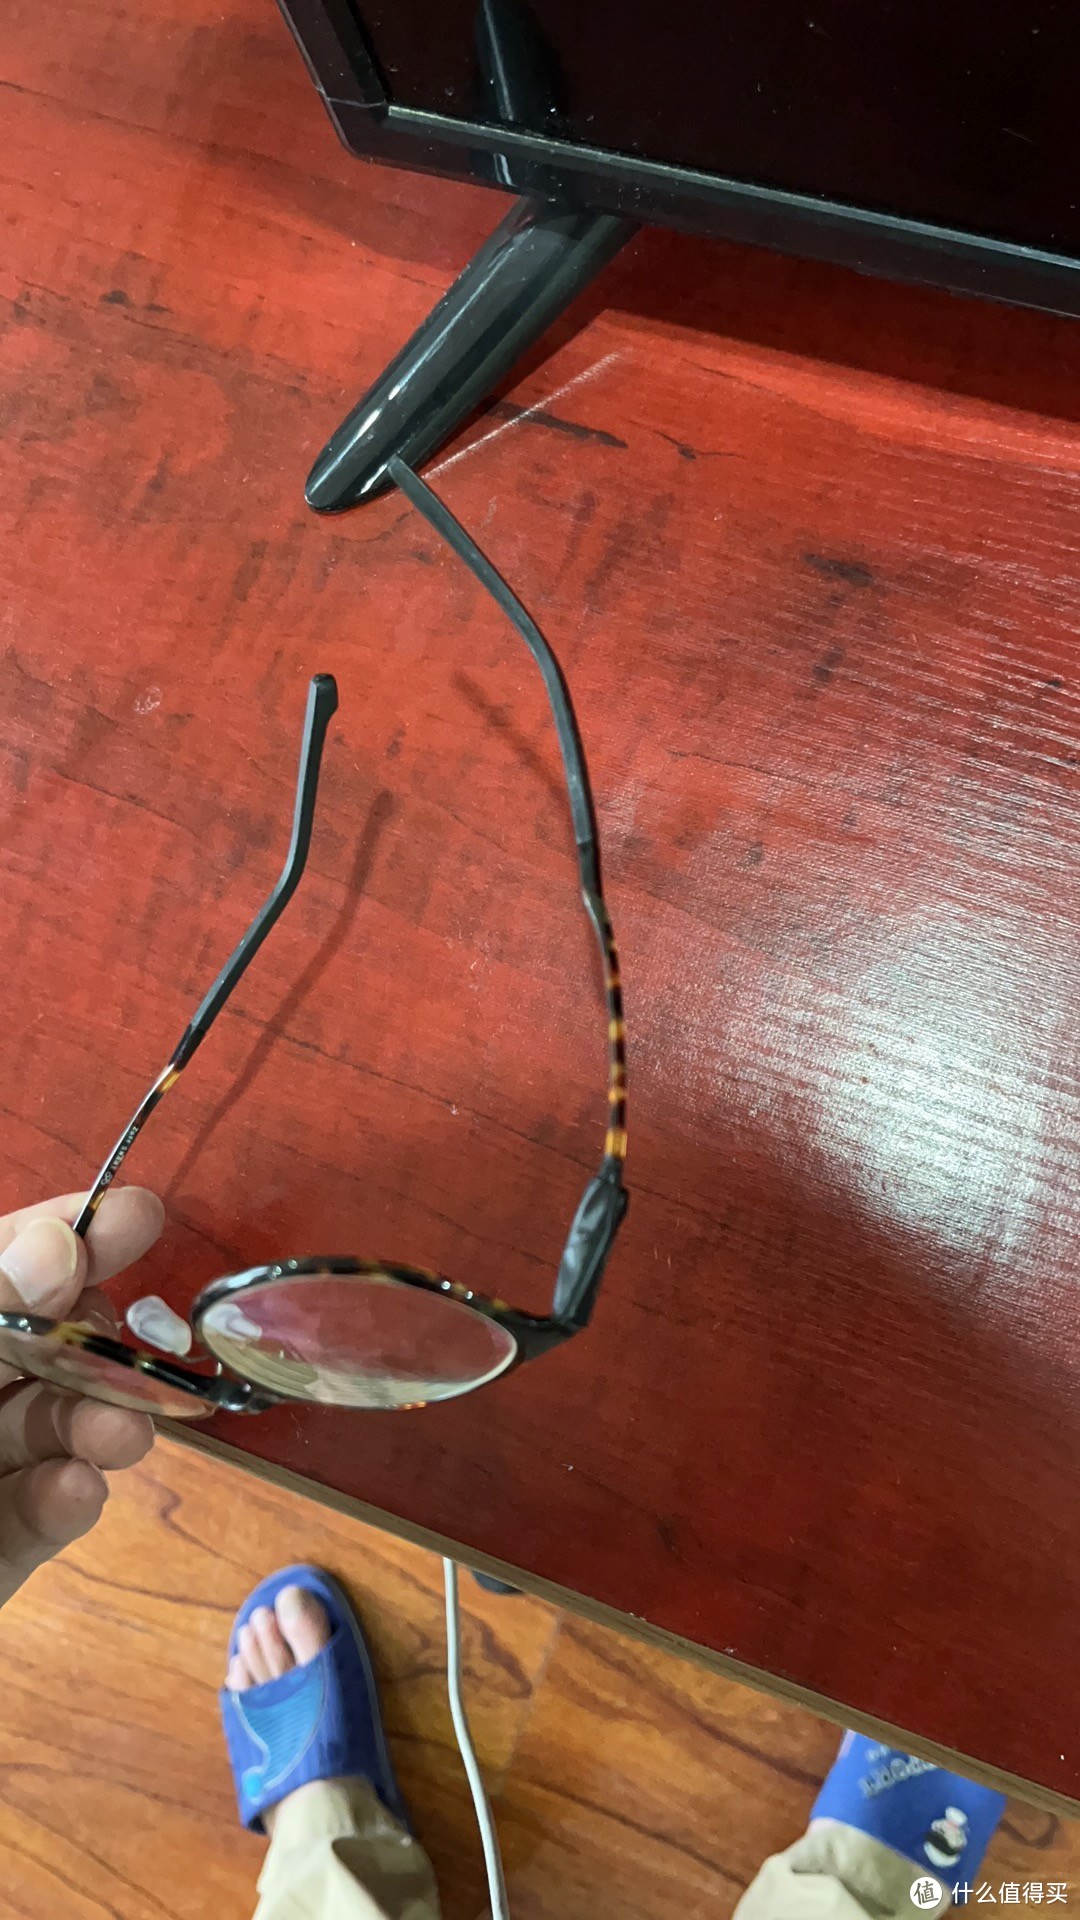 用电工胶简单修复了一下眼镜（近视眼就是麻烦啊）